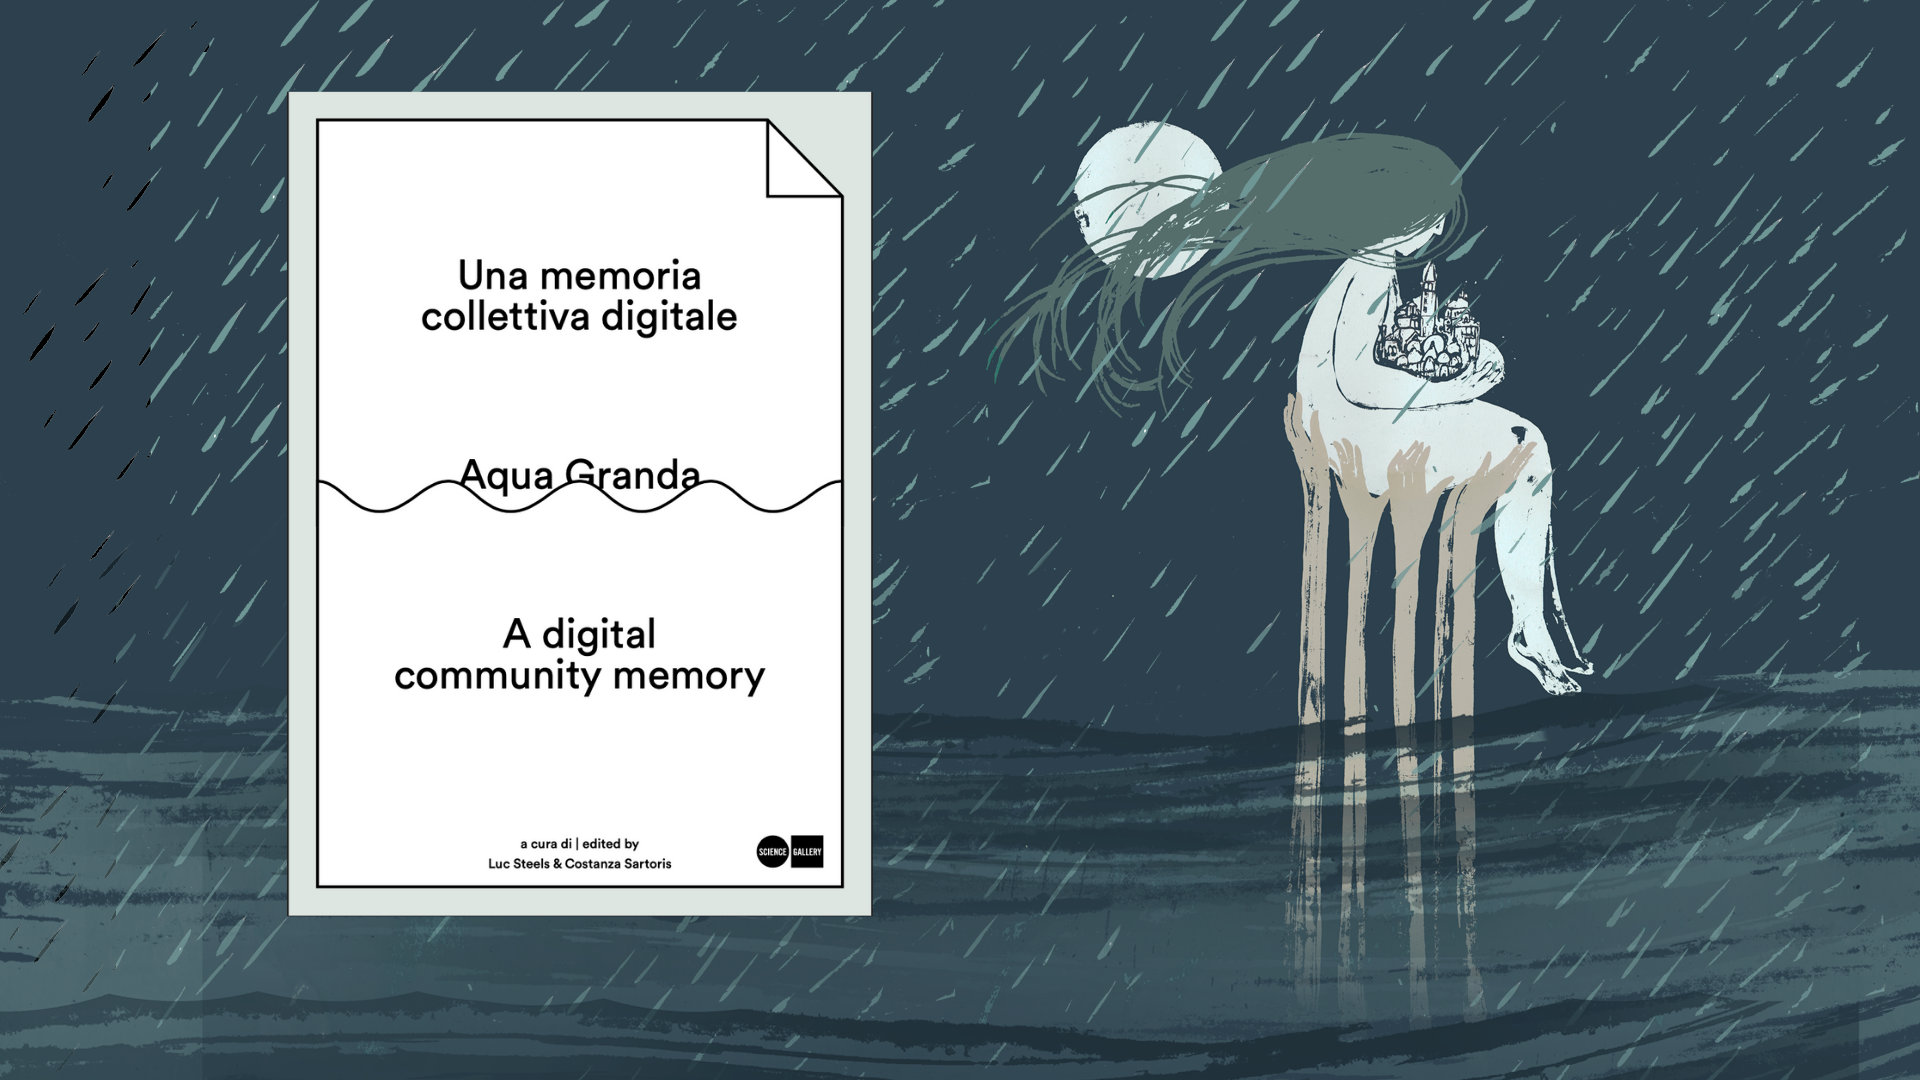 Aqua Granda Una memoria collettiva digitale - Catalogo!